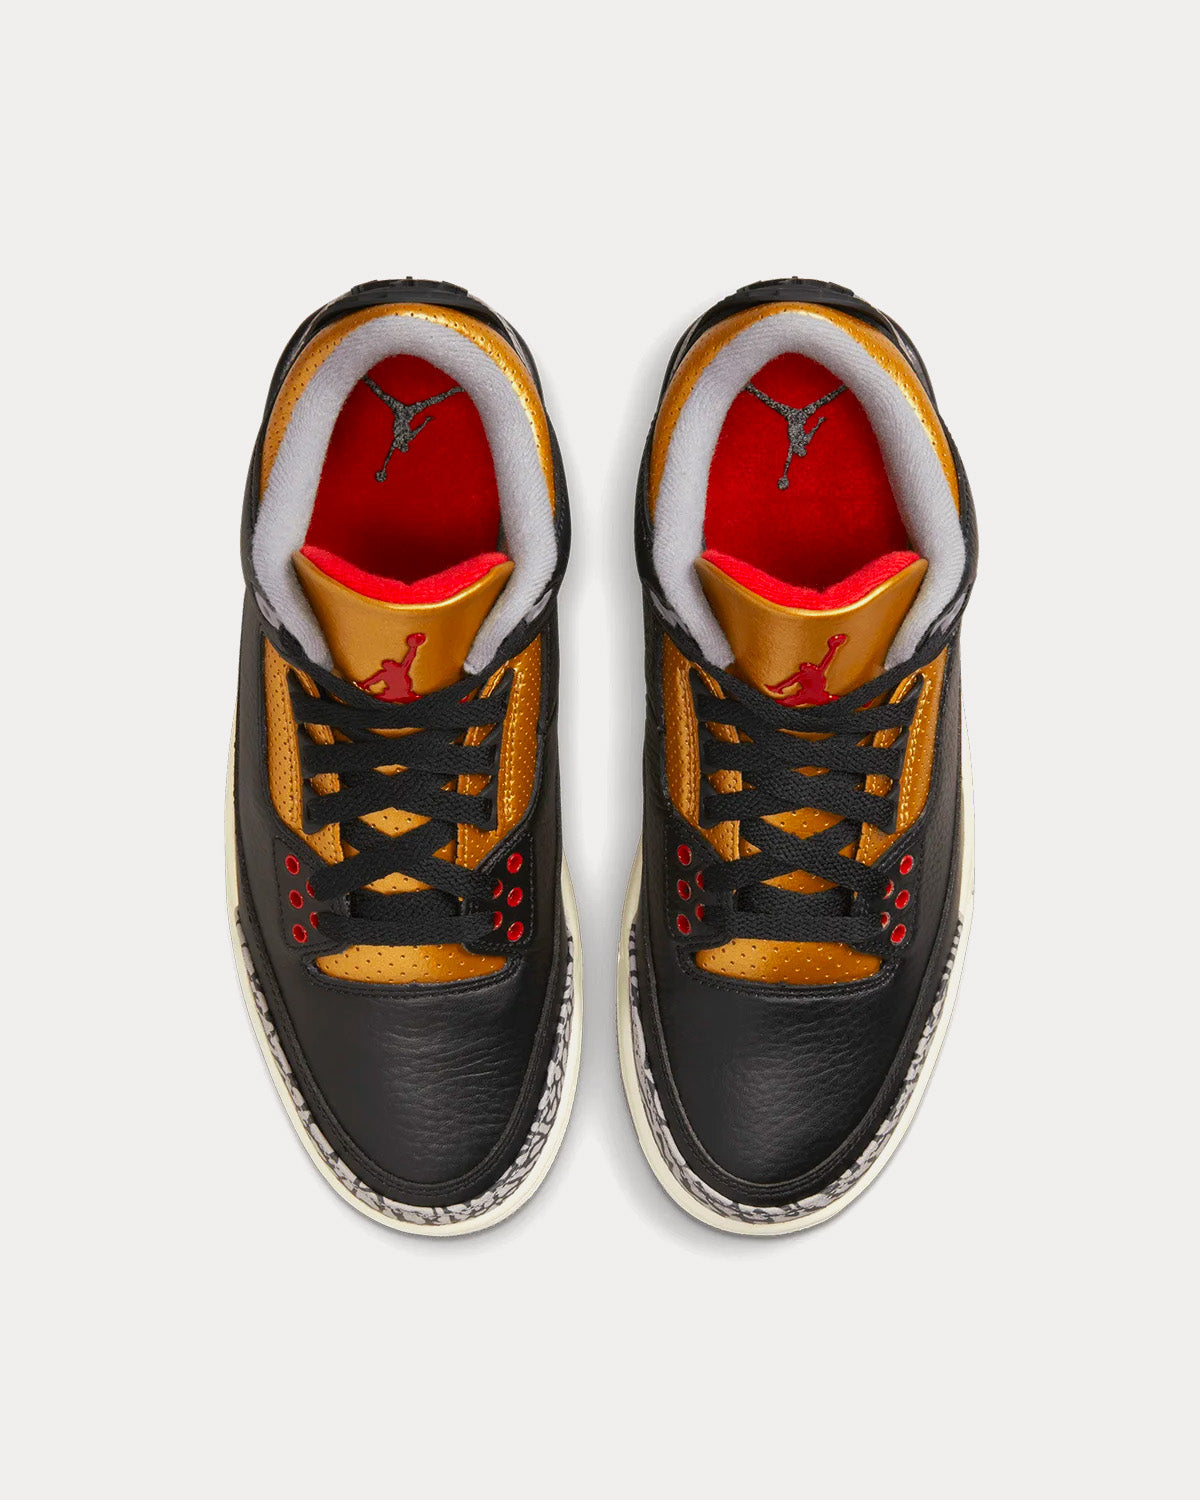 Jordan - Air Jordan 3 Retro 'Black Cement Gold' High Top Sneakers